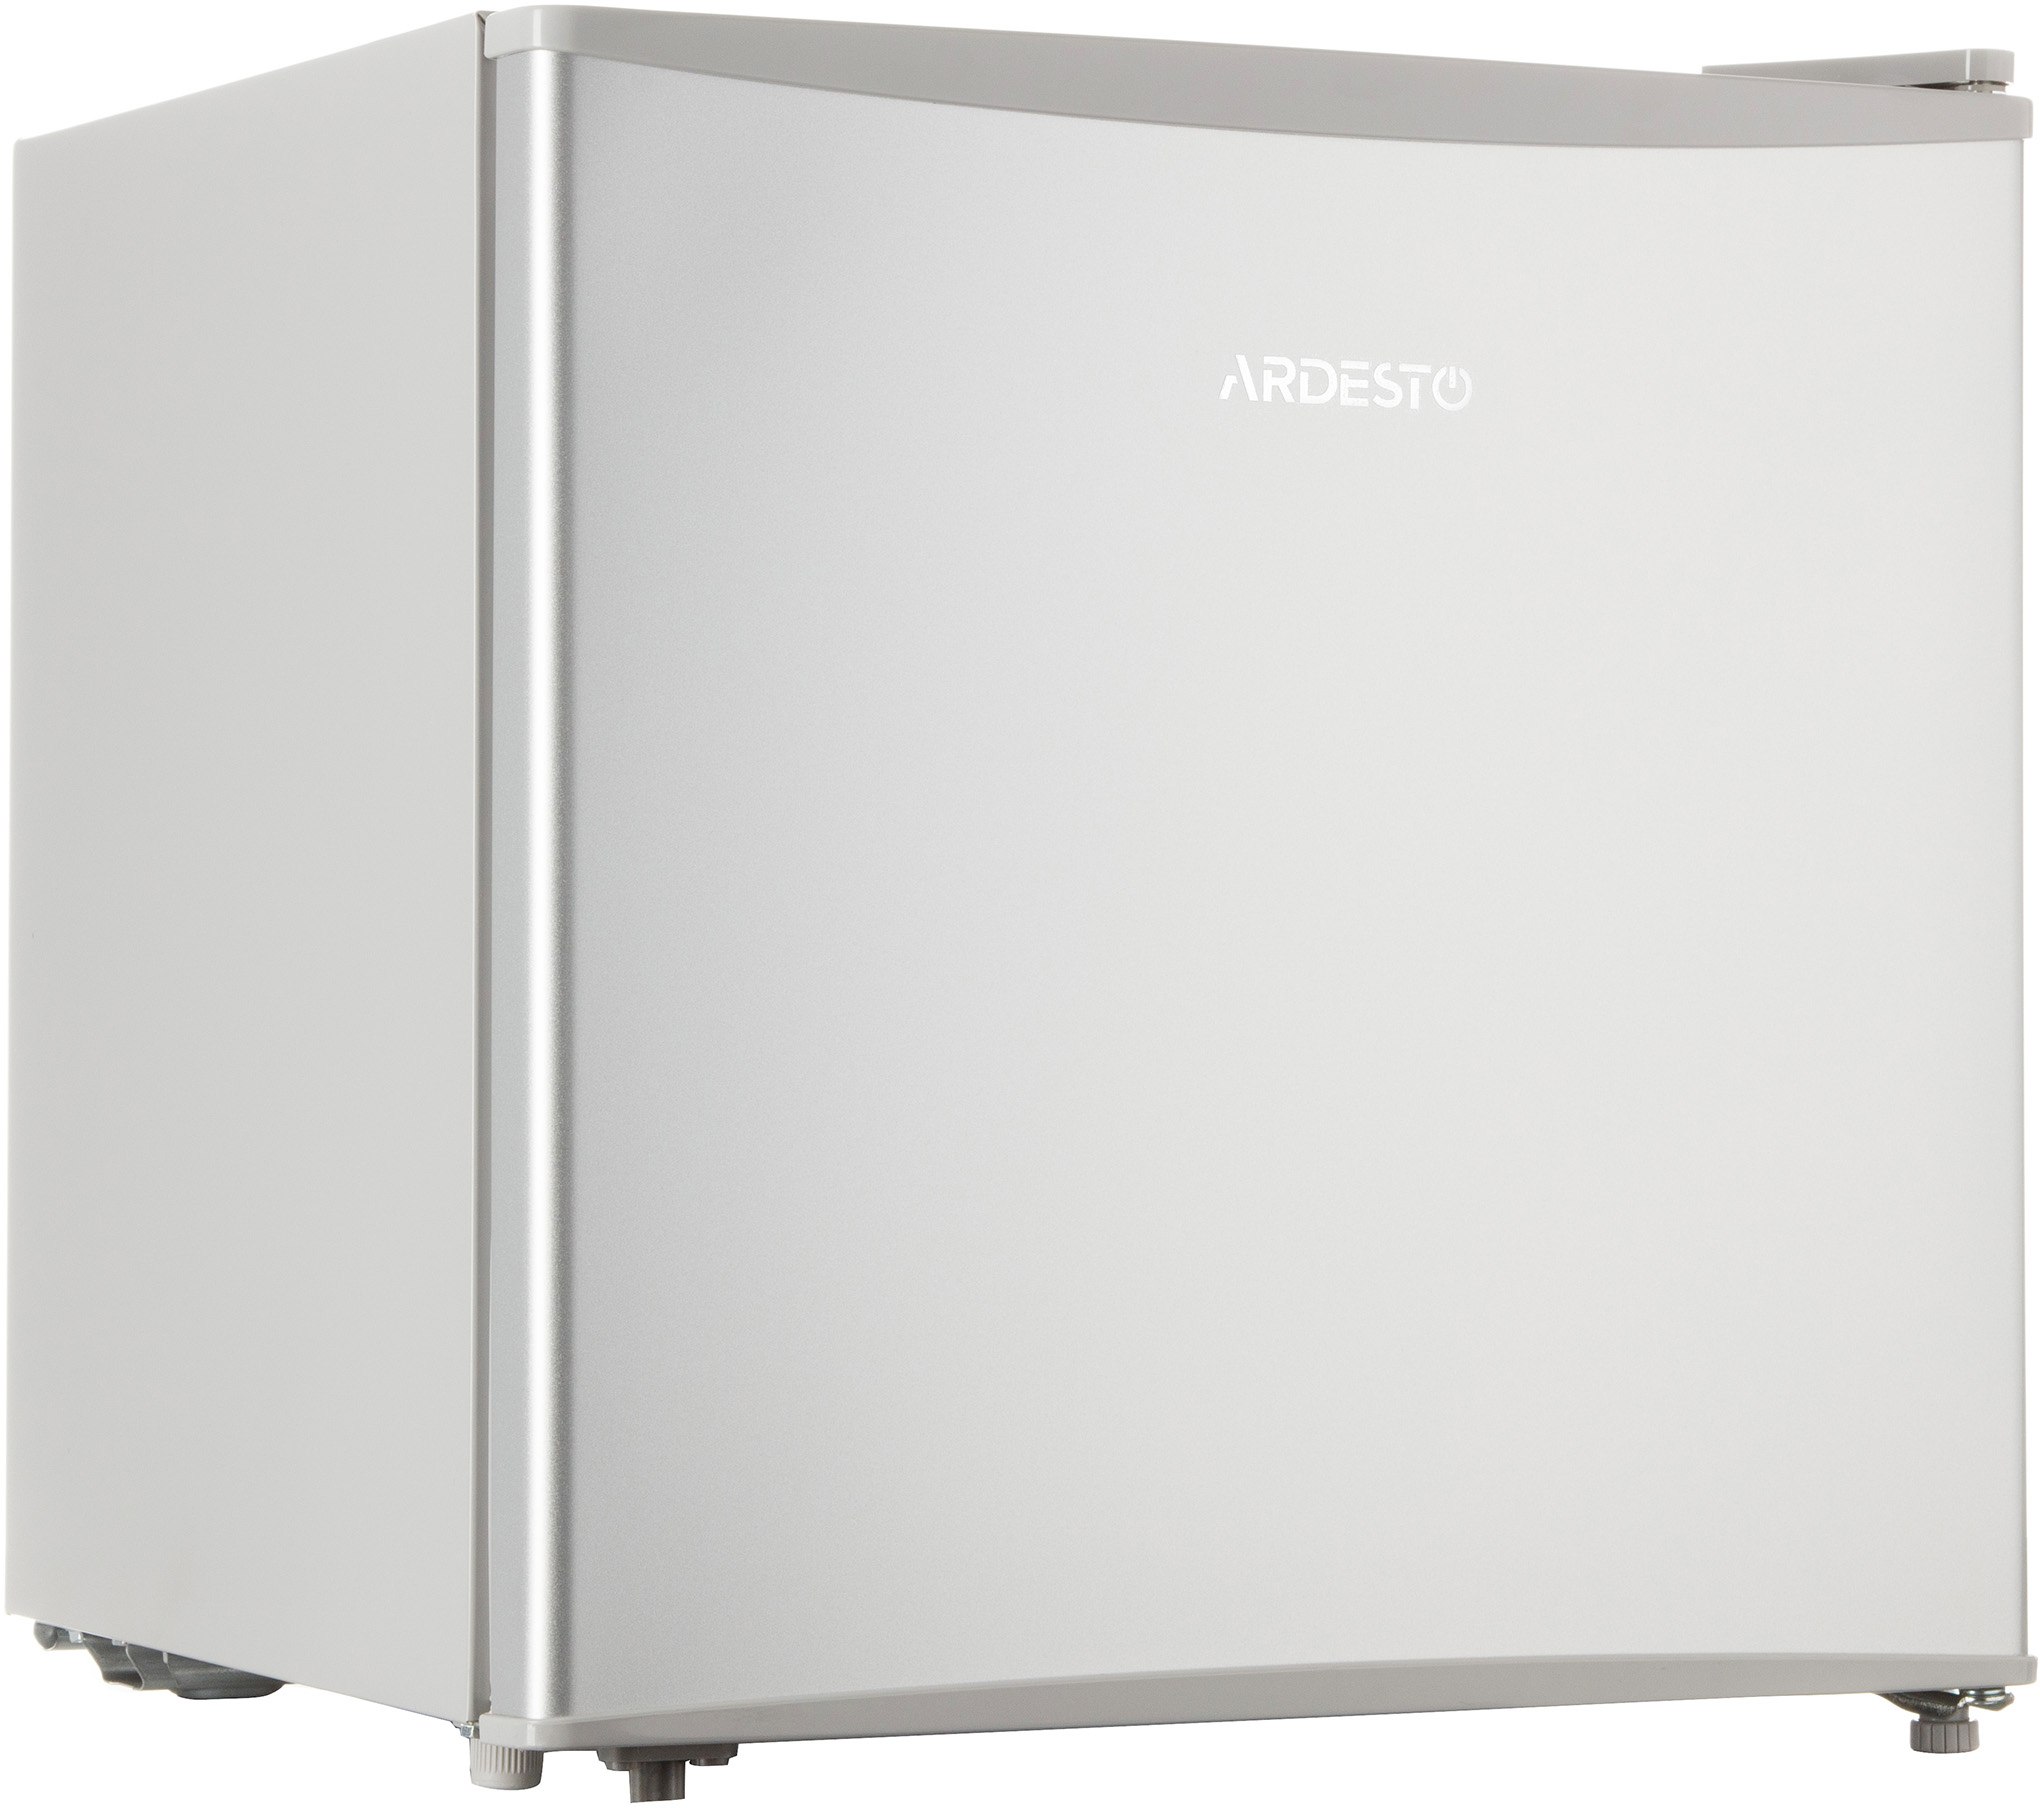 Купить холодильник Ardesto DFM-50X в Киеве